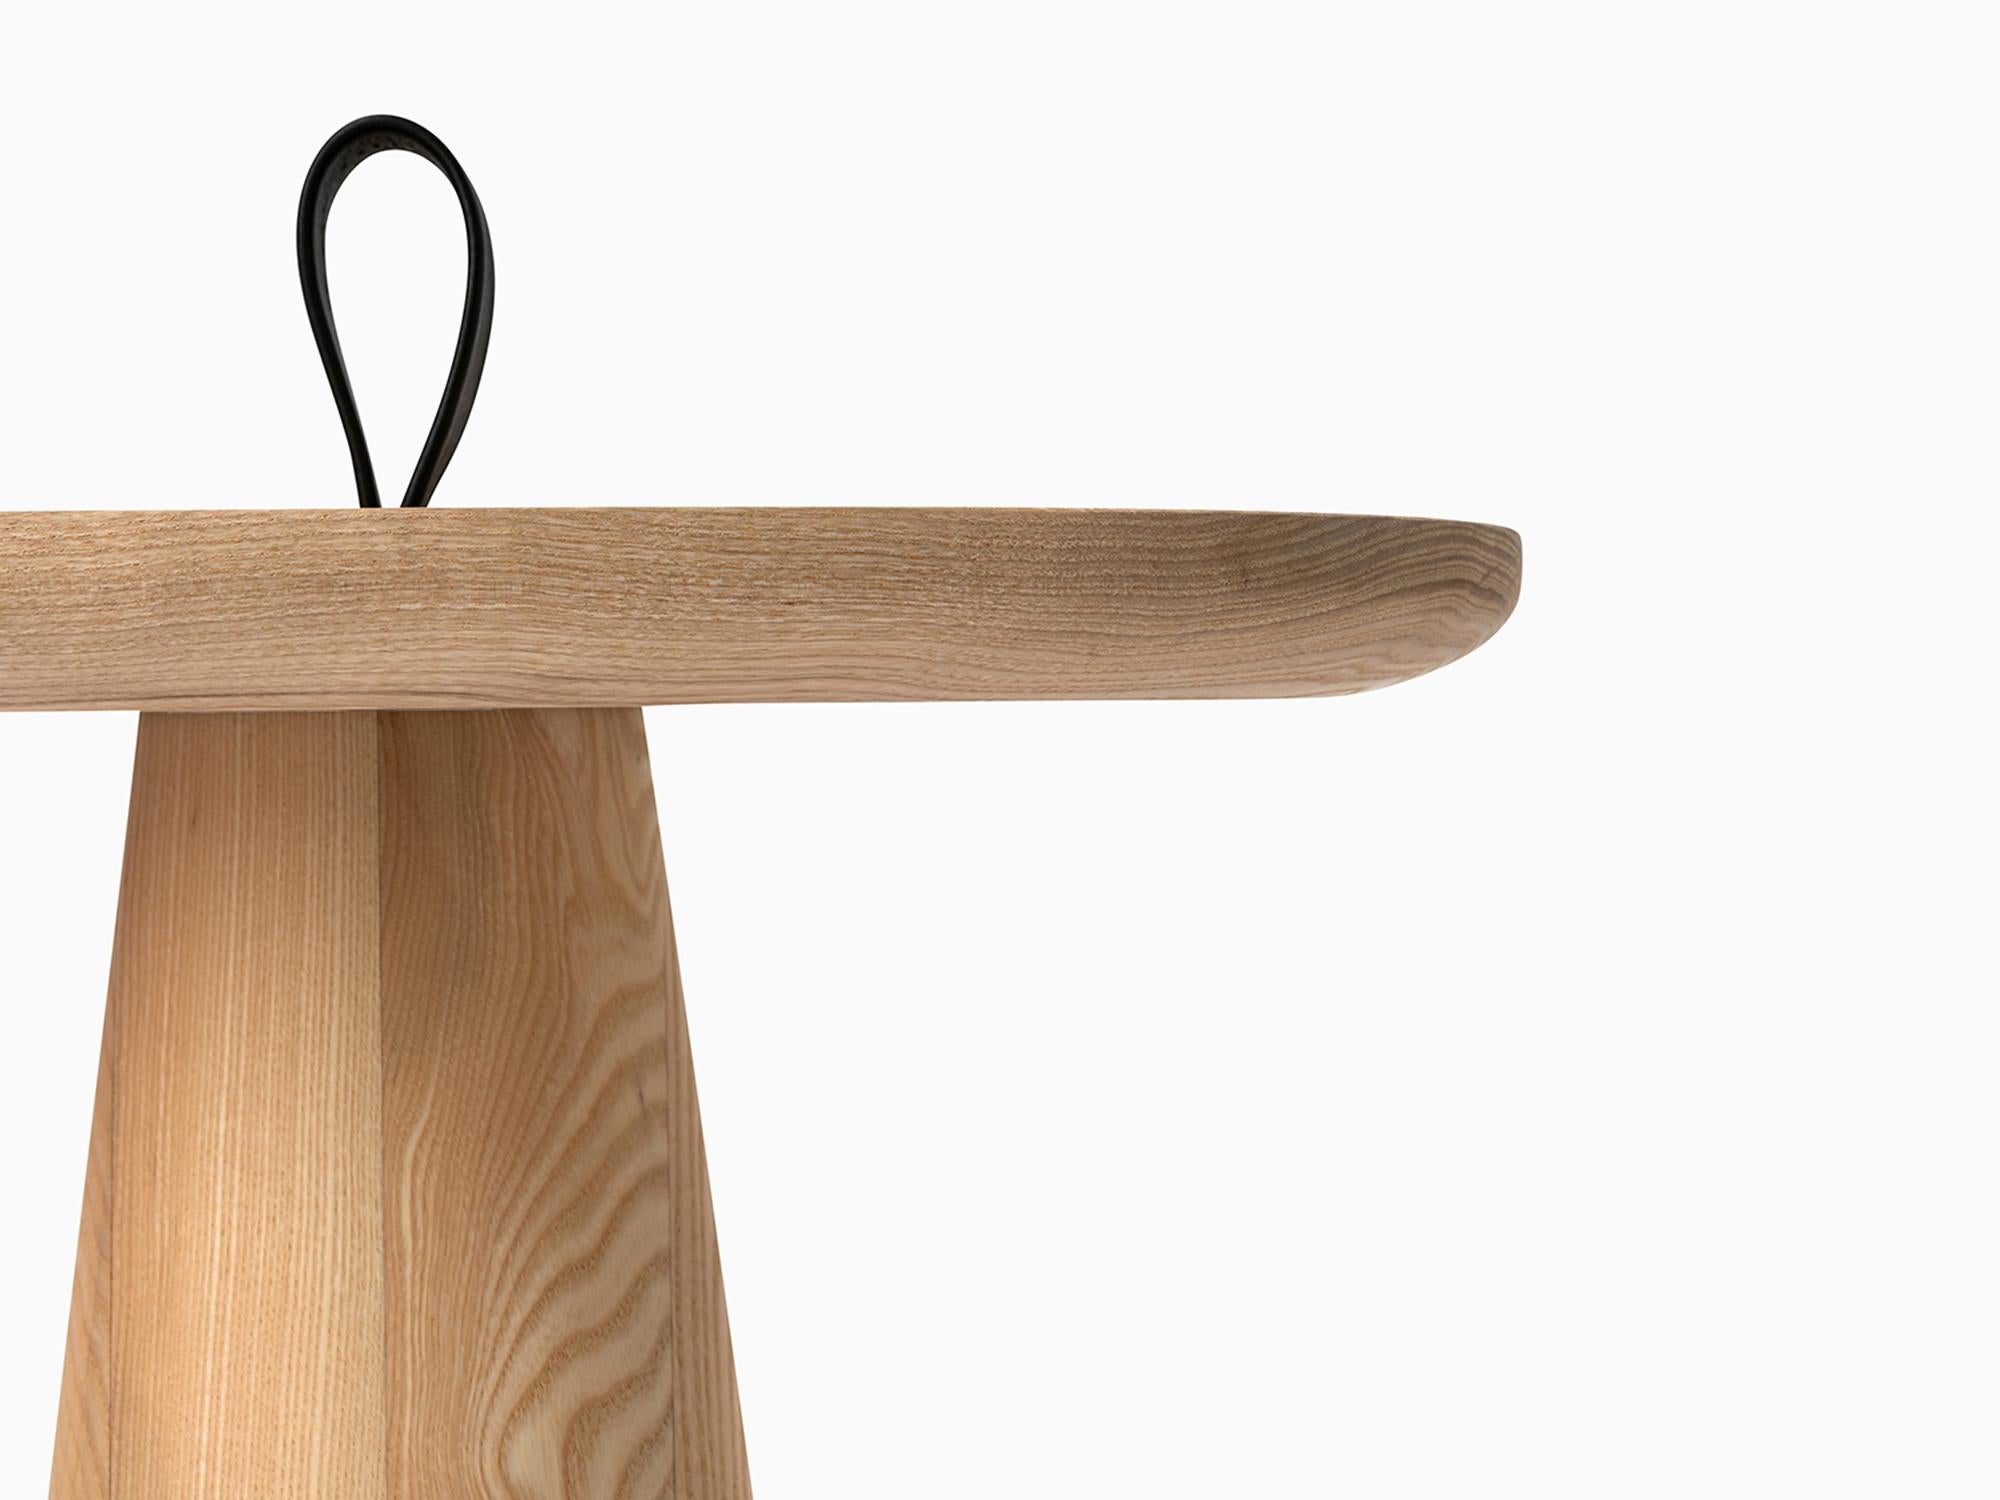 Der minimalistische Migo-Tisch besteht aus zwei Teilen: einer Tischplatte und einem konisch geformten Sockel, dessen Oberseite mit einem Riemen zum Anheben endet.

Die weiche und freundliche Form der Platte macht den Tisch für verschiedene